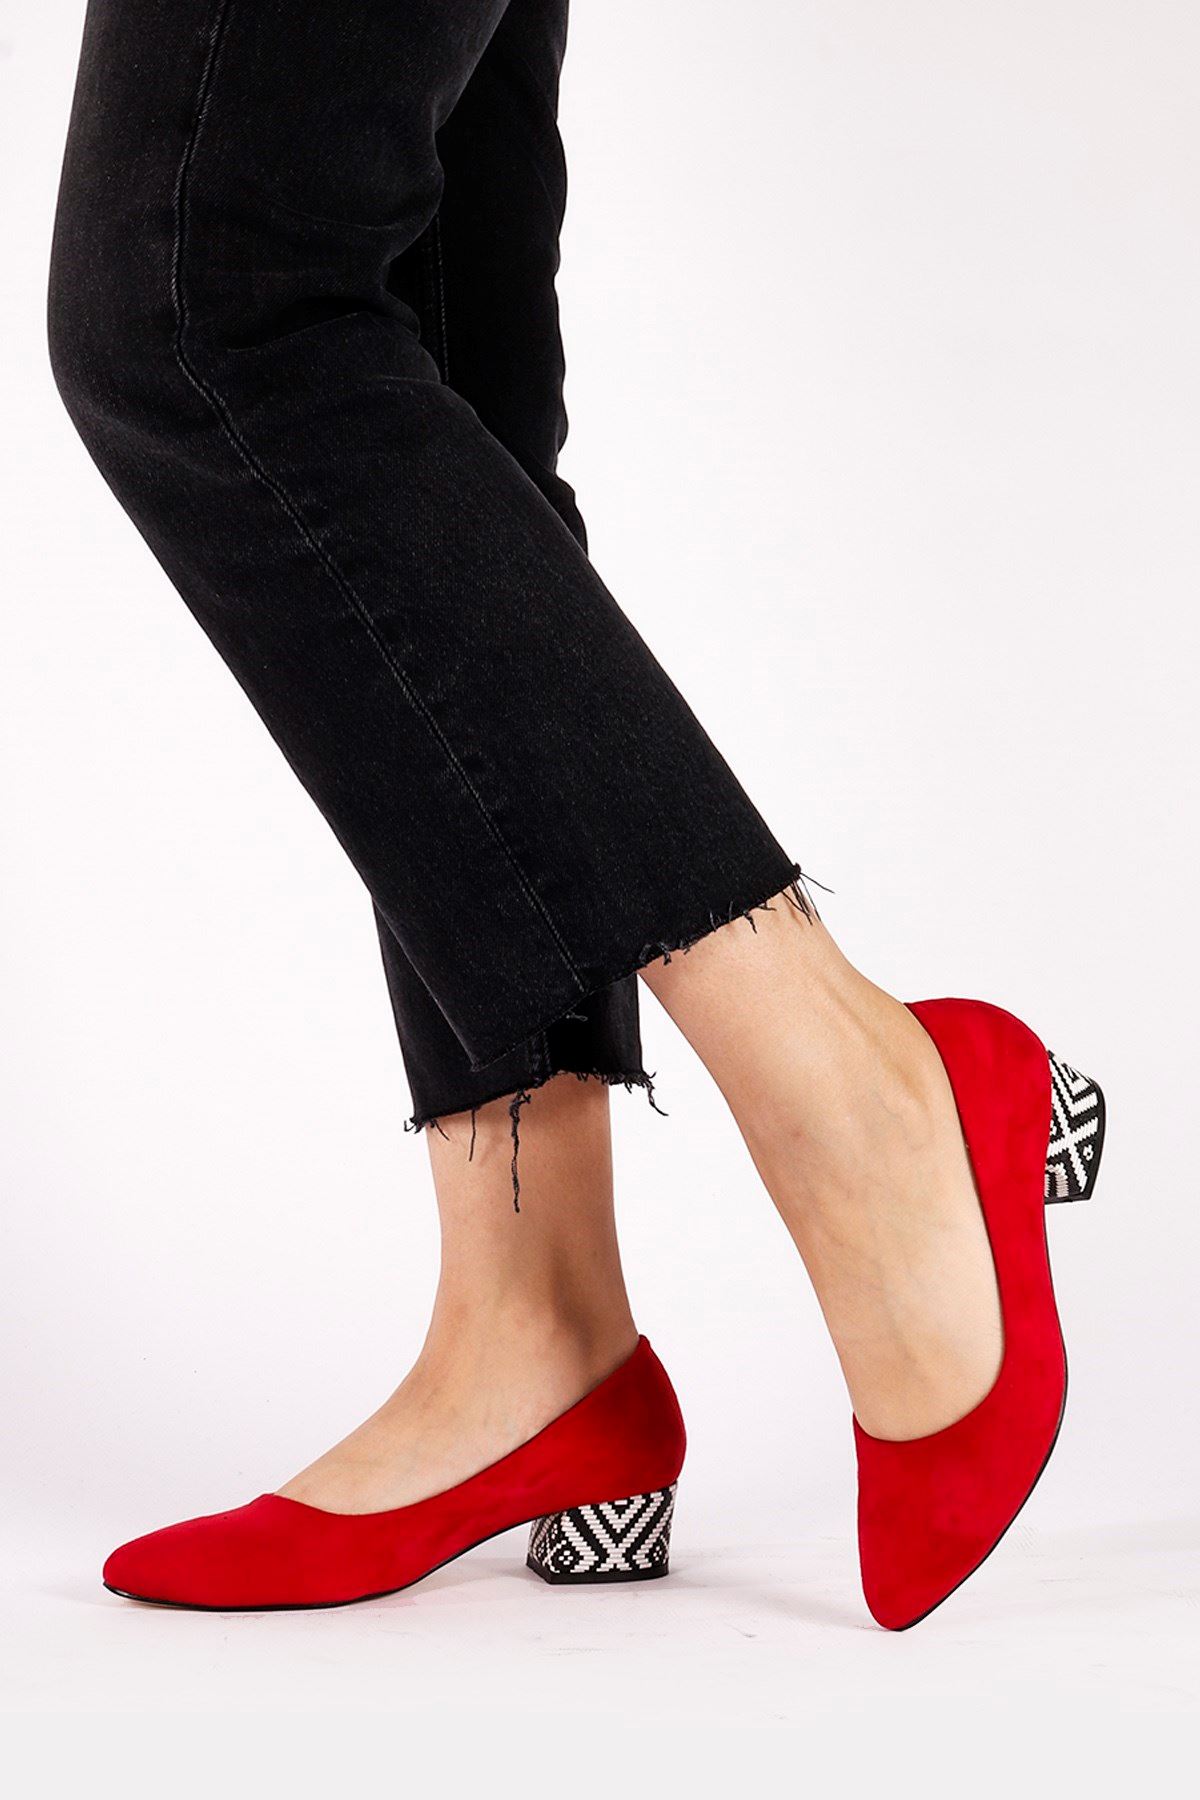 Fori Kırmızı Süet Topuklu Ayakkabı